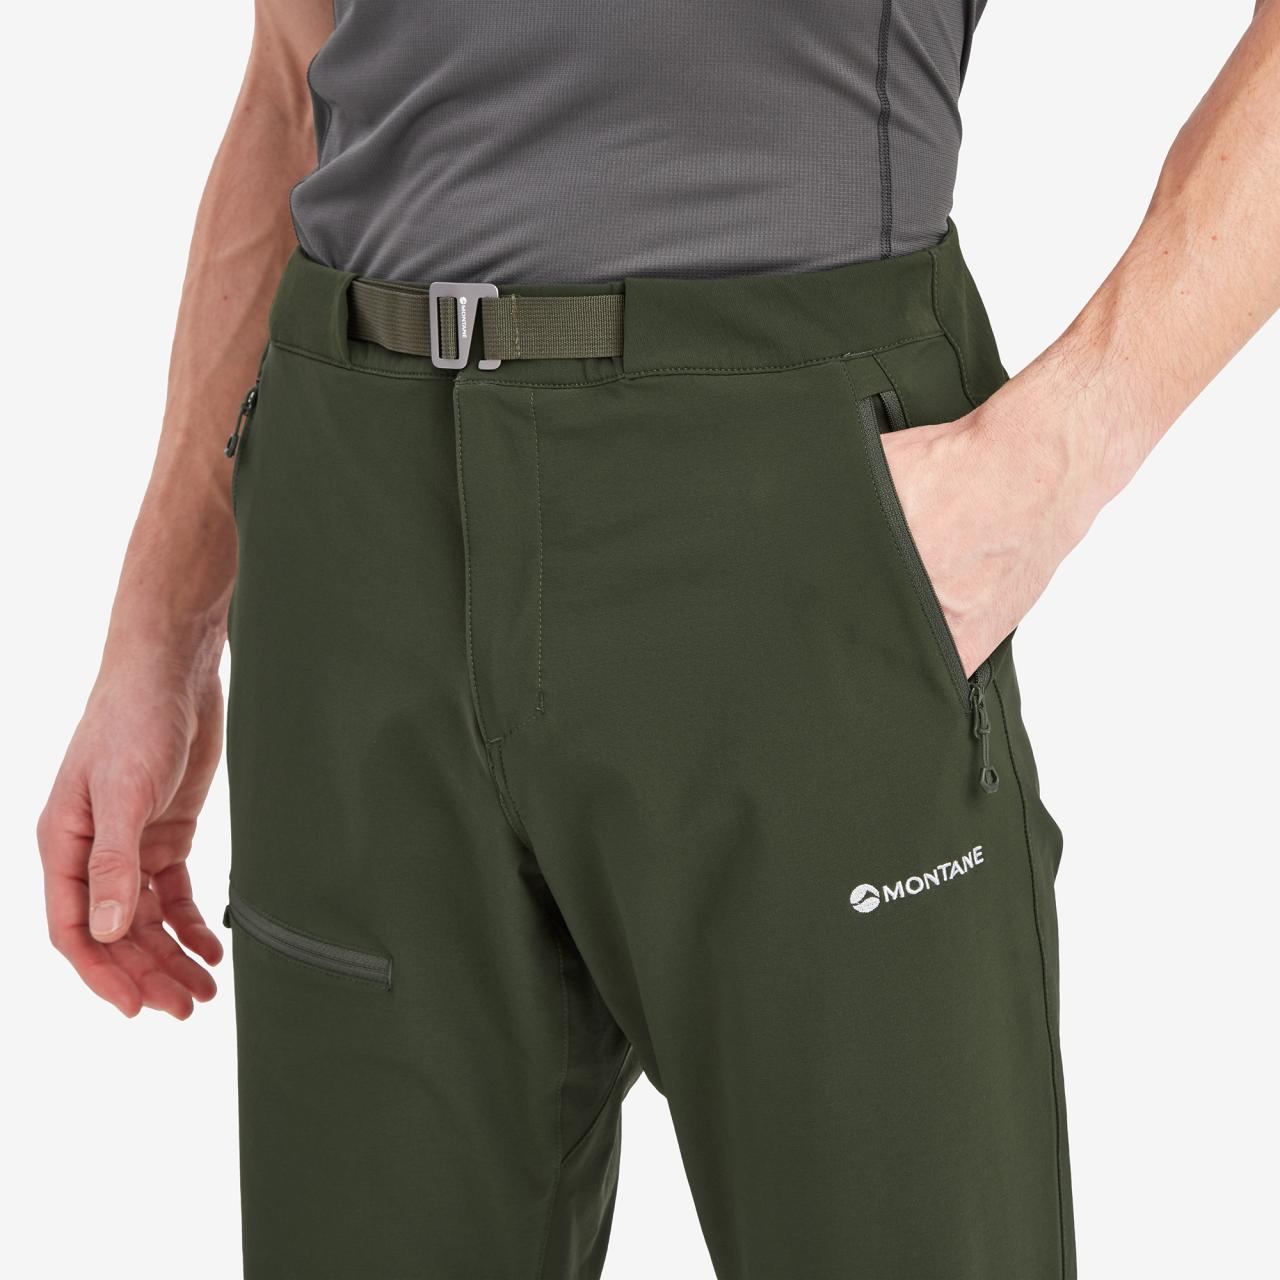 TENACITY PANTS REG LEG-OAK GREEN-32/M pánské kalhoty zelené